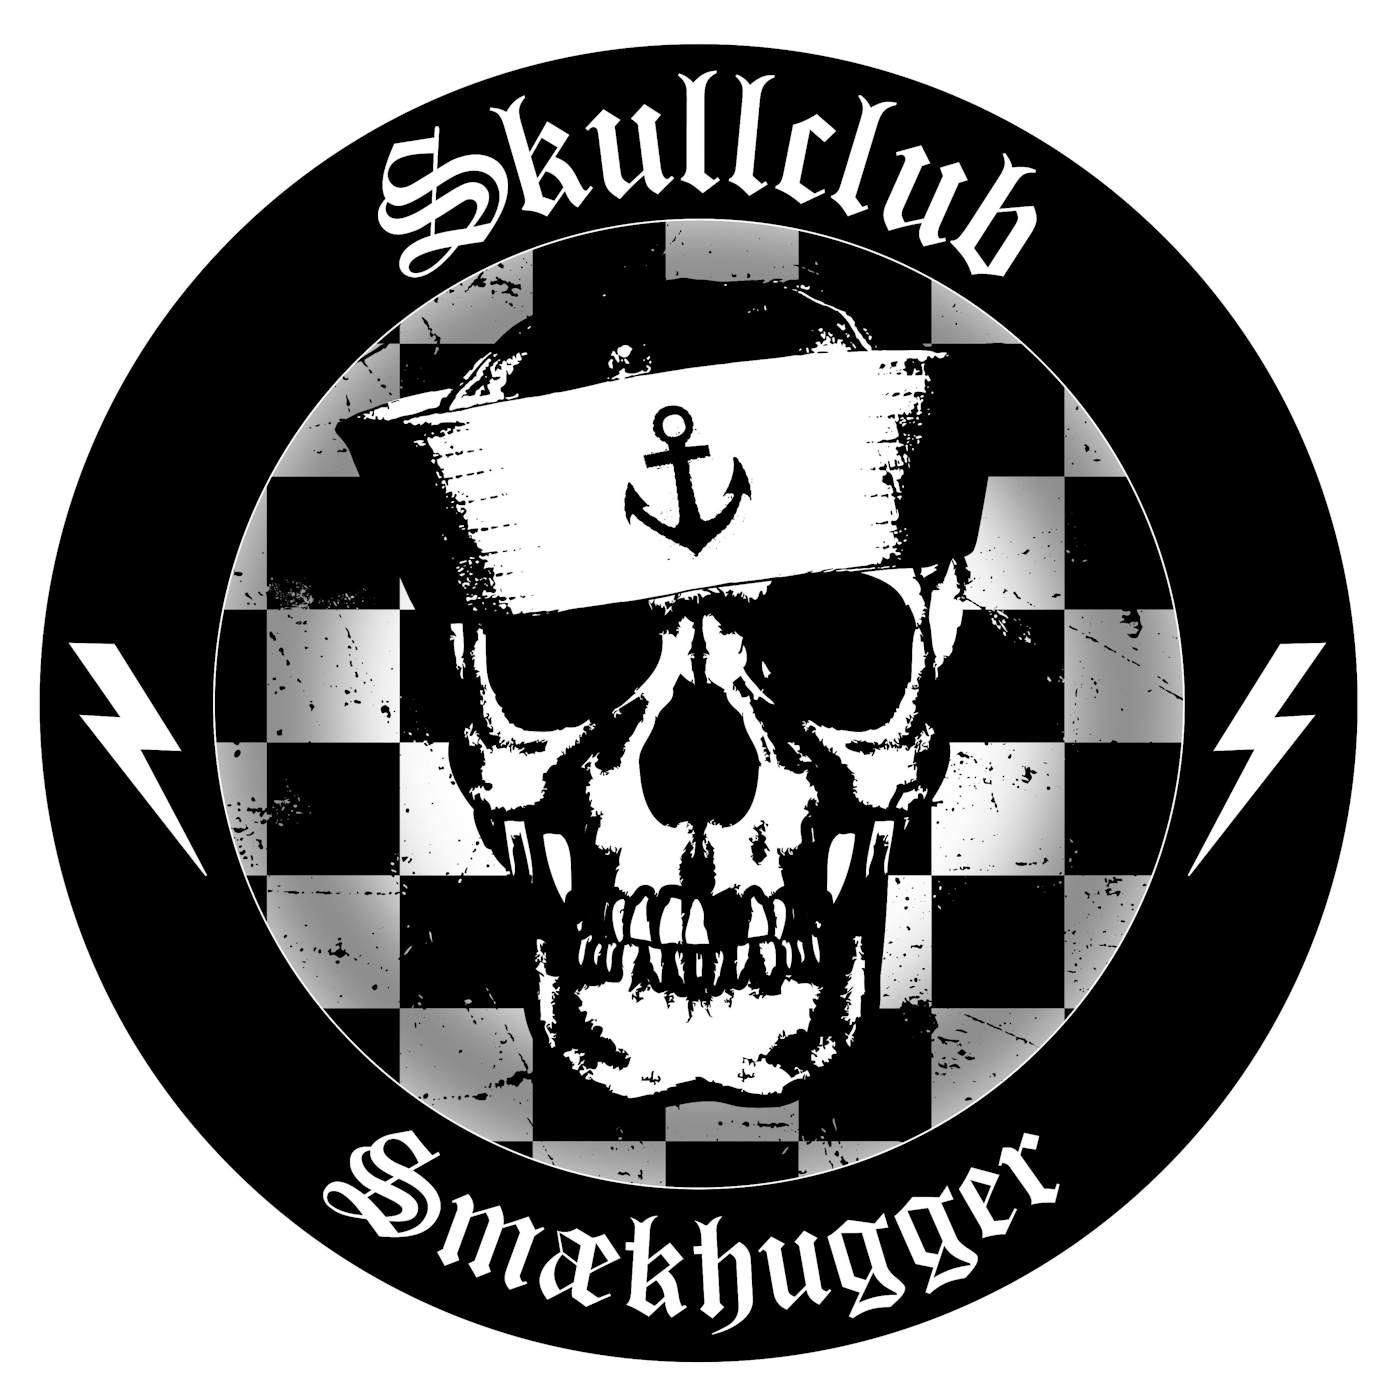 Skullclub SMAEKHUGGER Vinyl Record